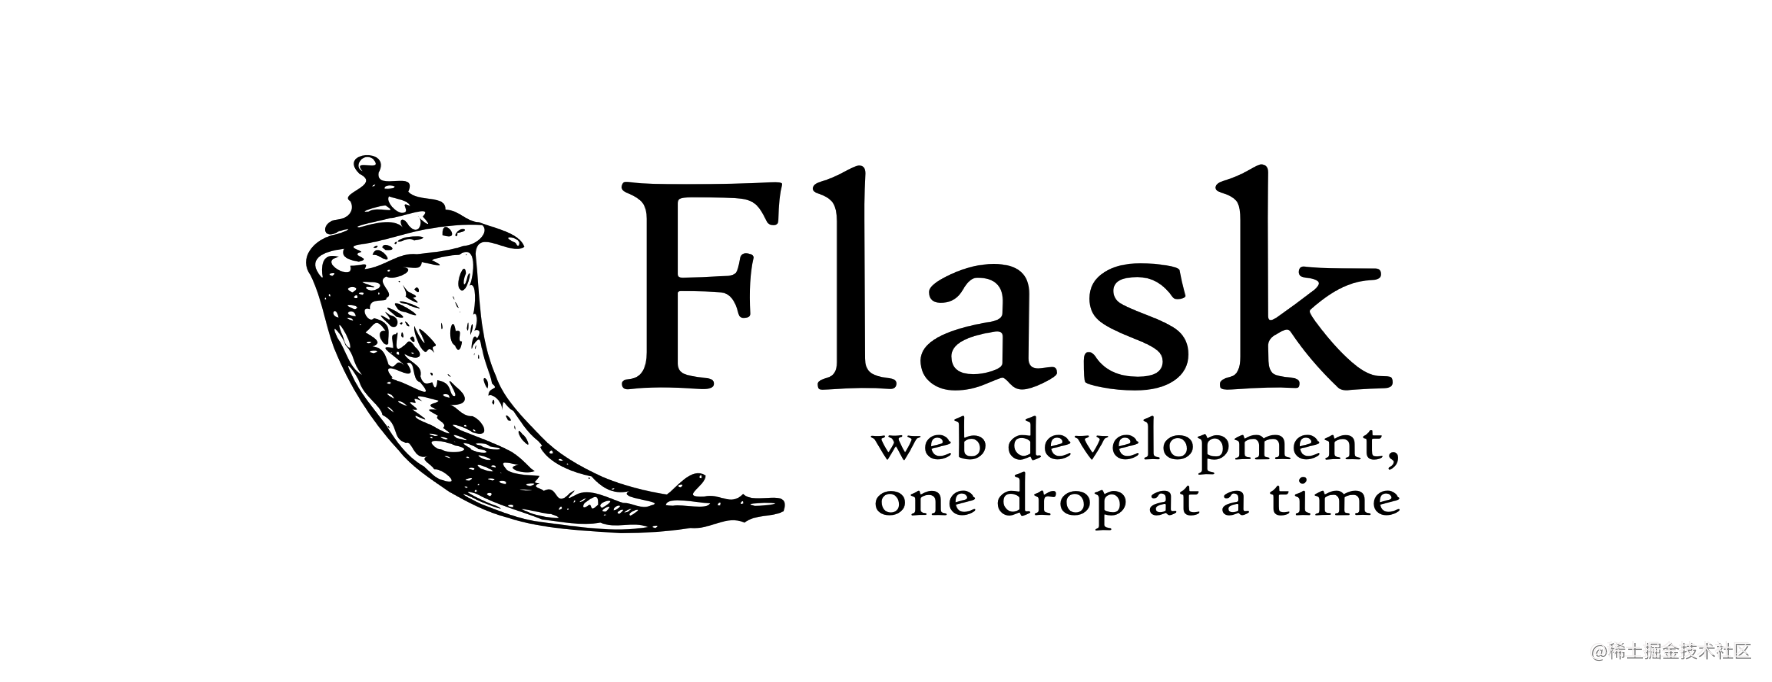 Python Flask 编程 | 连载 01 - Flask Quickstart